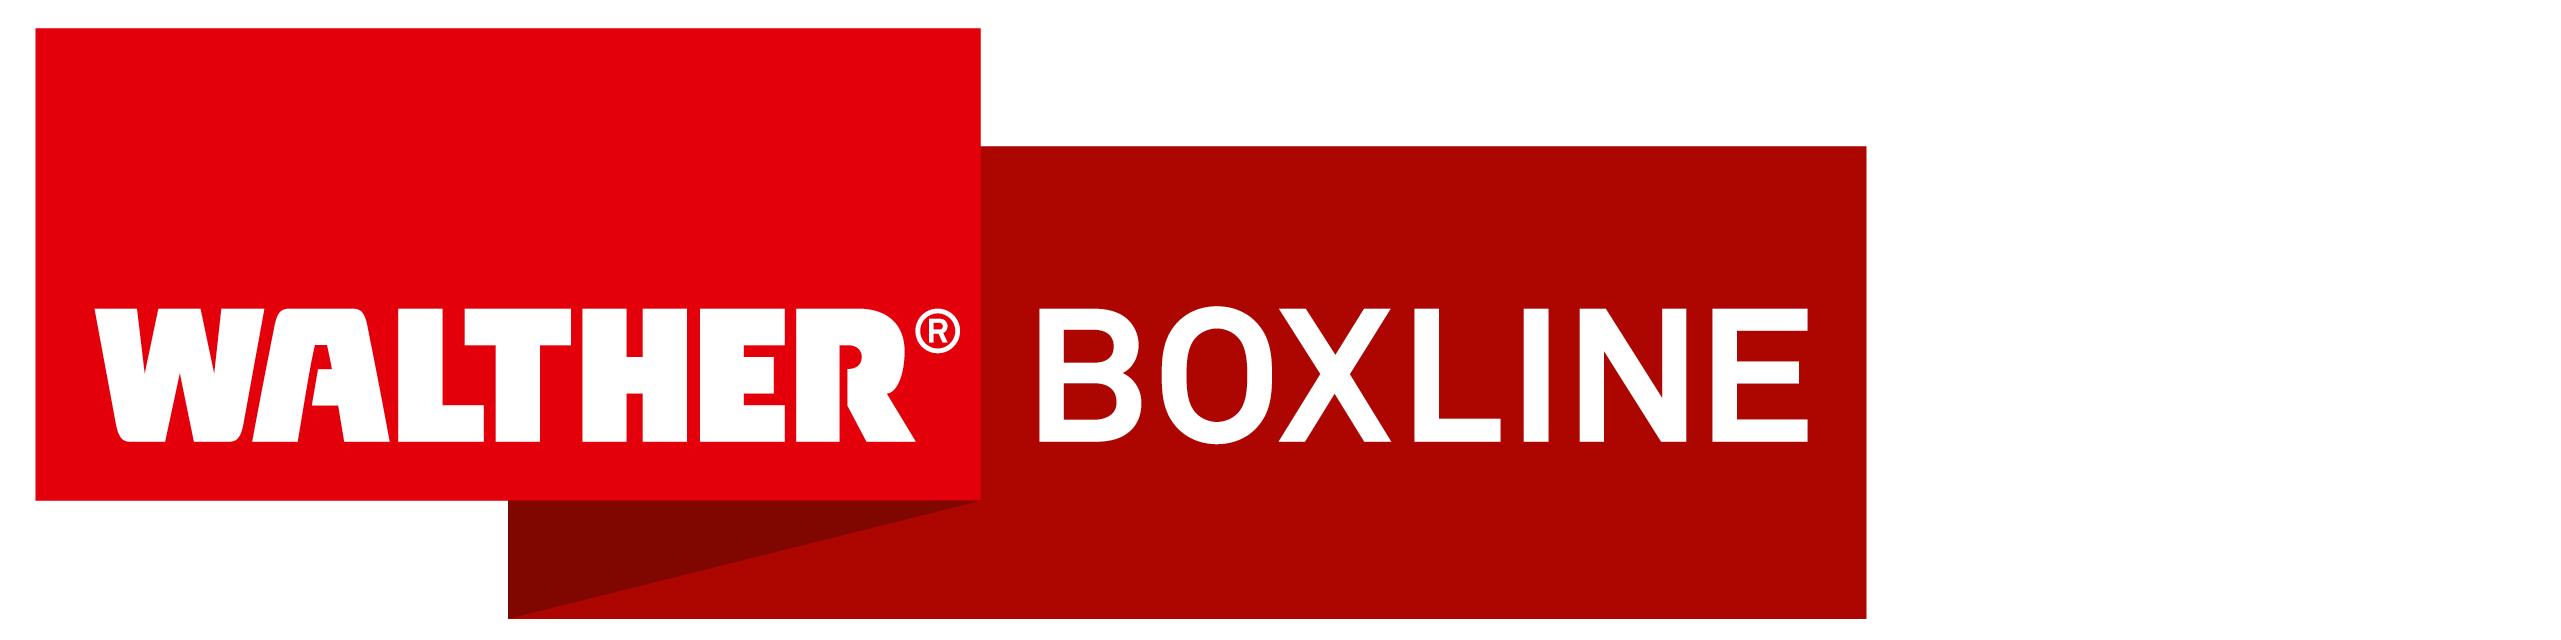 boxline.com/de Erfahrungen